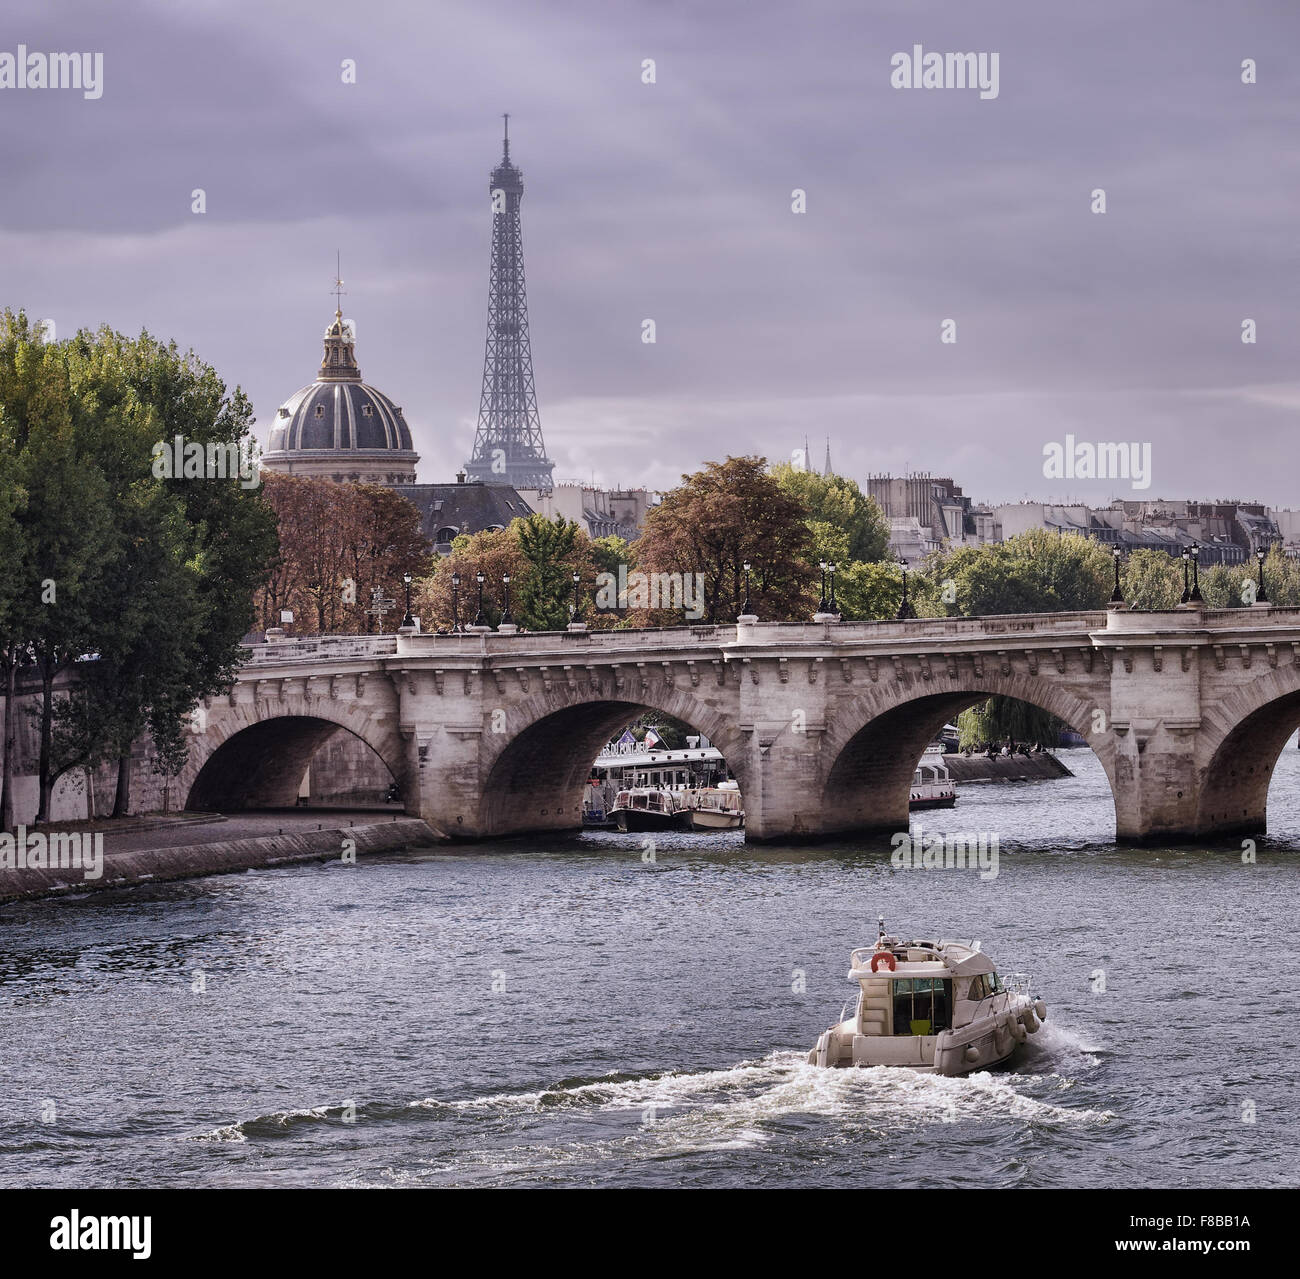 Paesaggio urbano di Parigi con la Torre Eiffel, il ponte e la barca Foto Stock